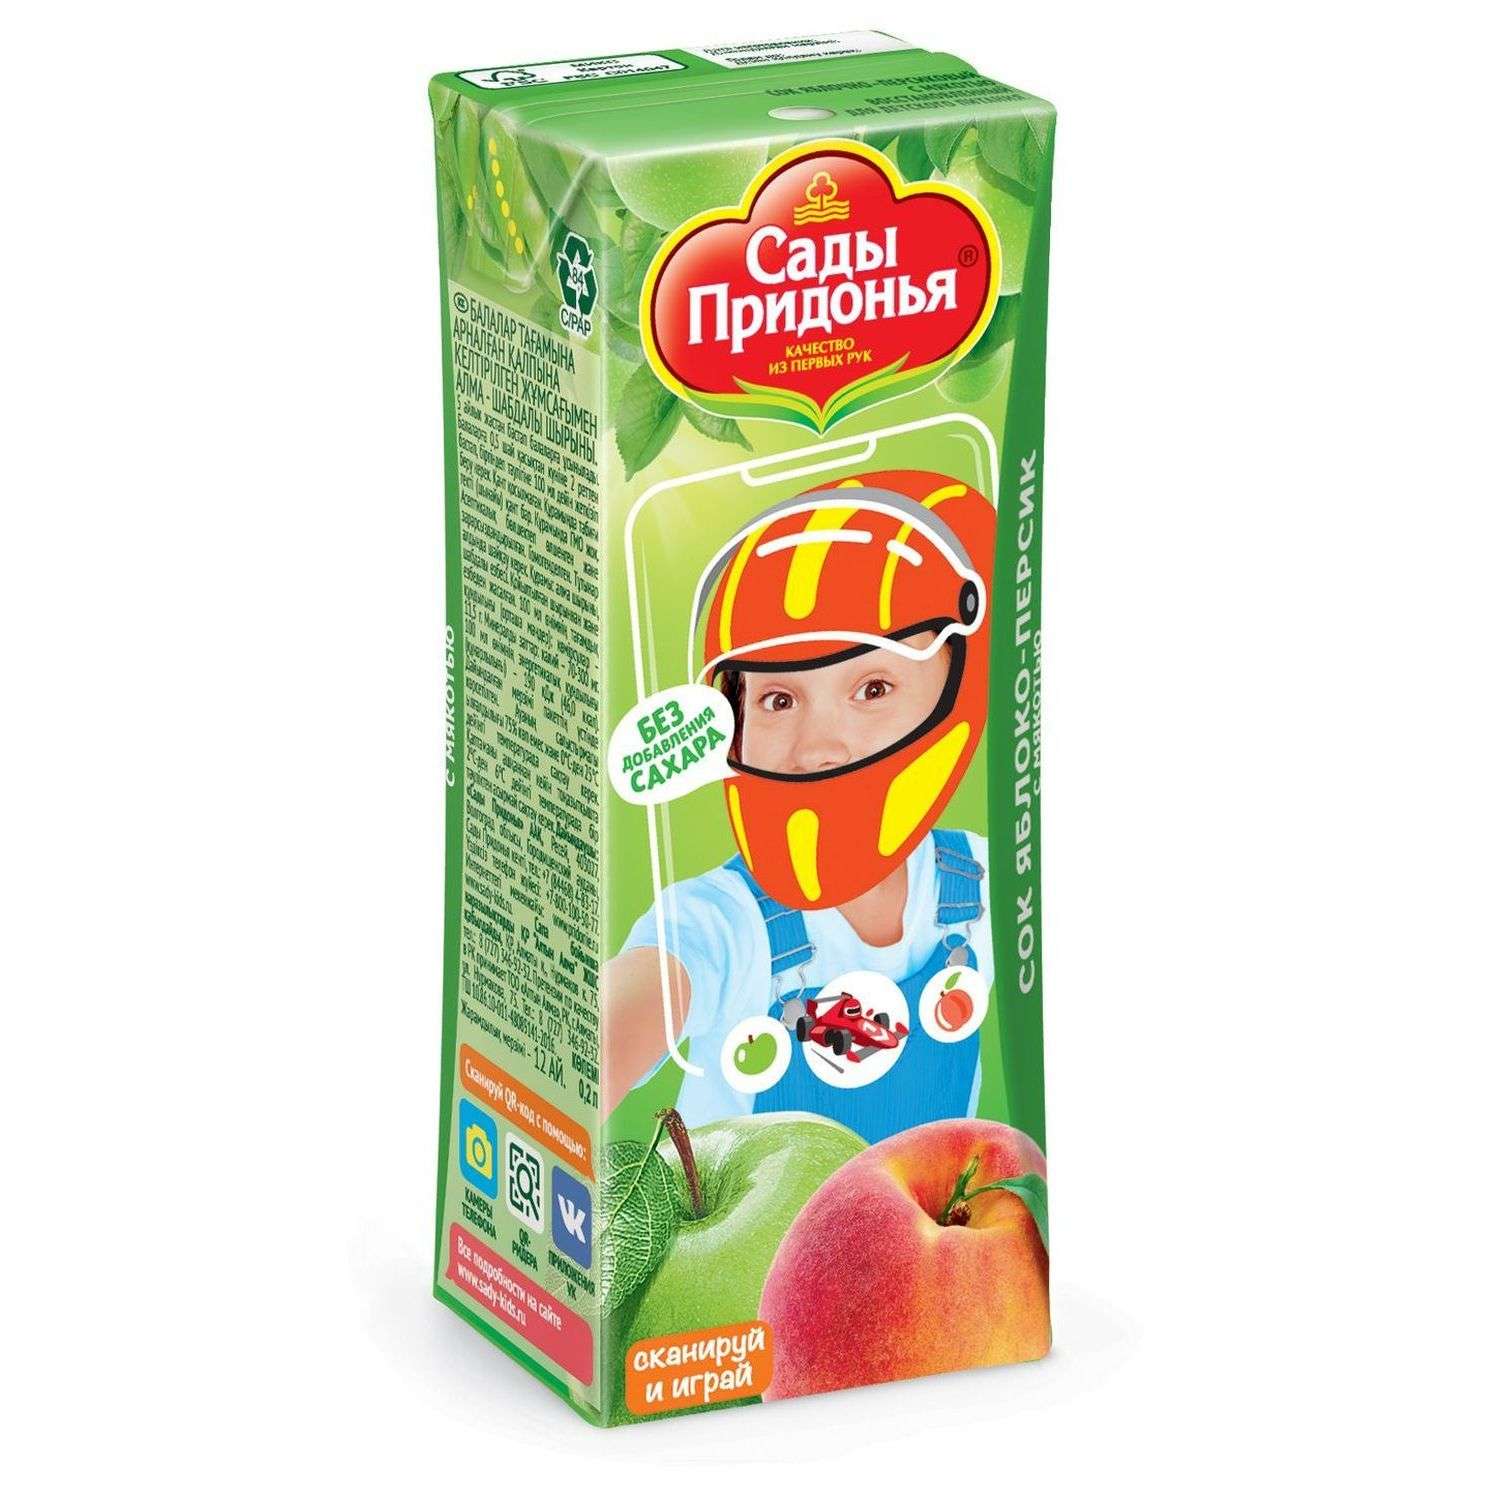 Сок Сады Придонья яблоко-персик с мякотью 0.2л с 6месяцев - фото 9